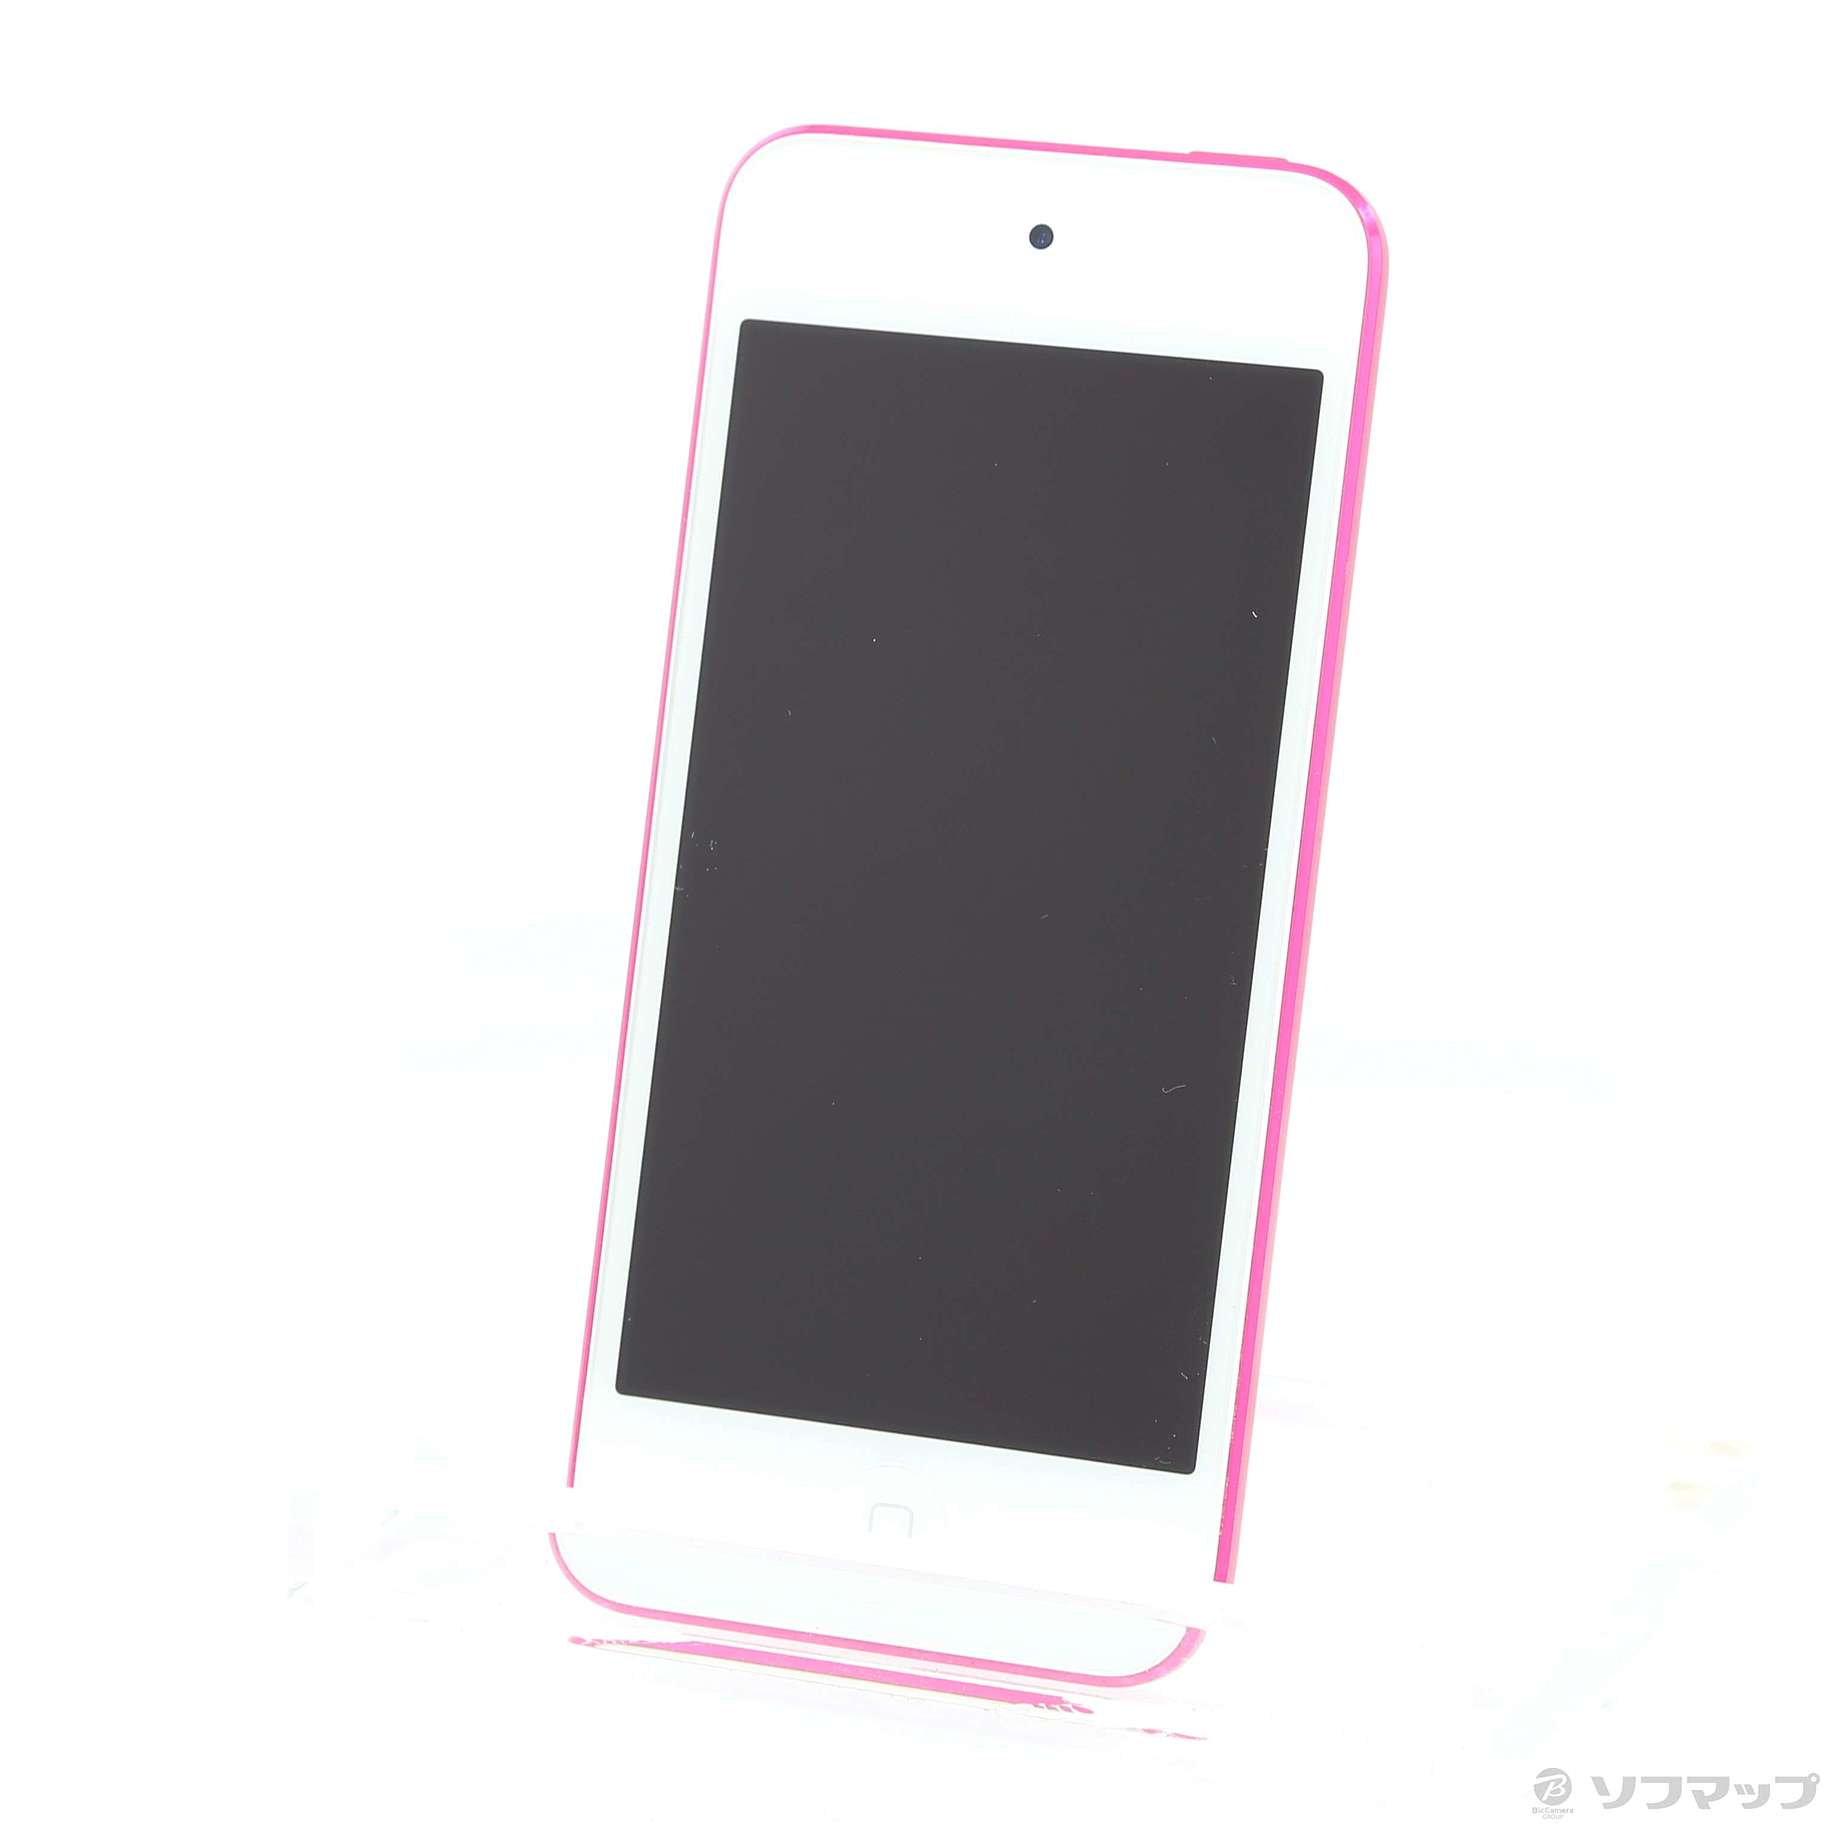 オーディオ機器【新品】【未開封】【宅急便】7世代 iPod touch 32GB ピンク